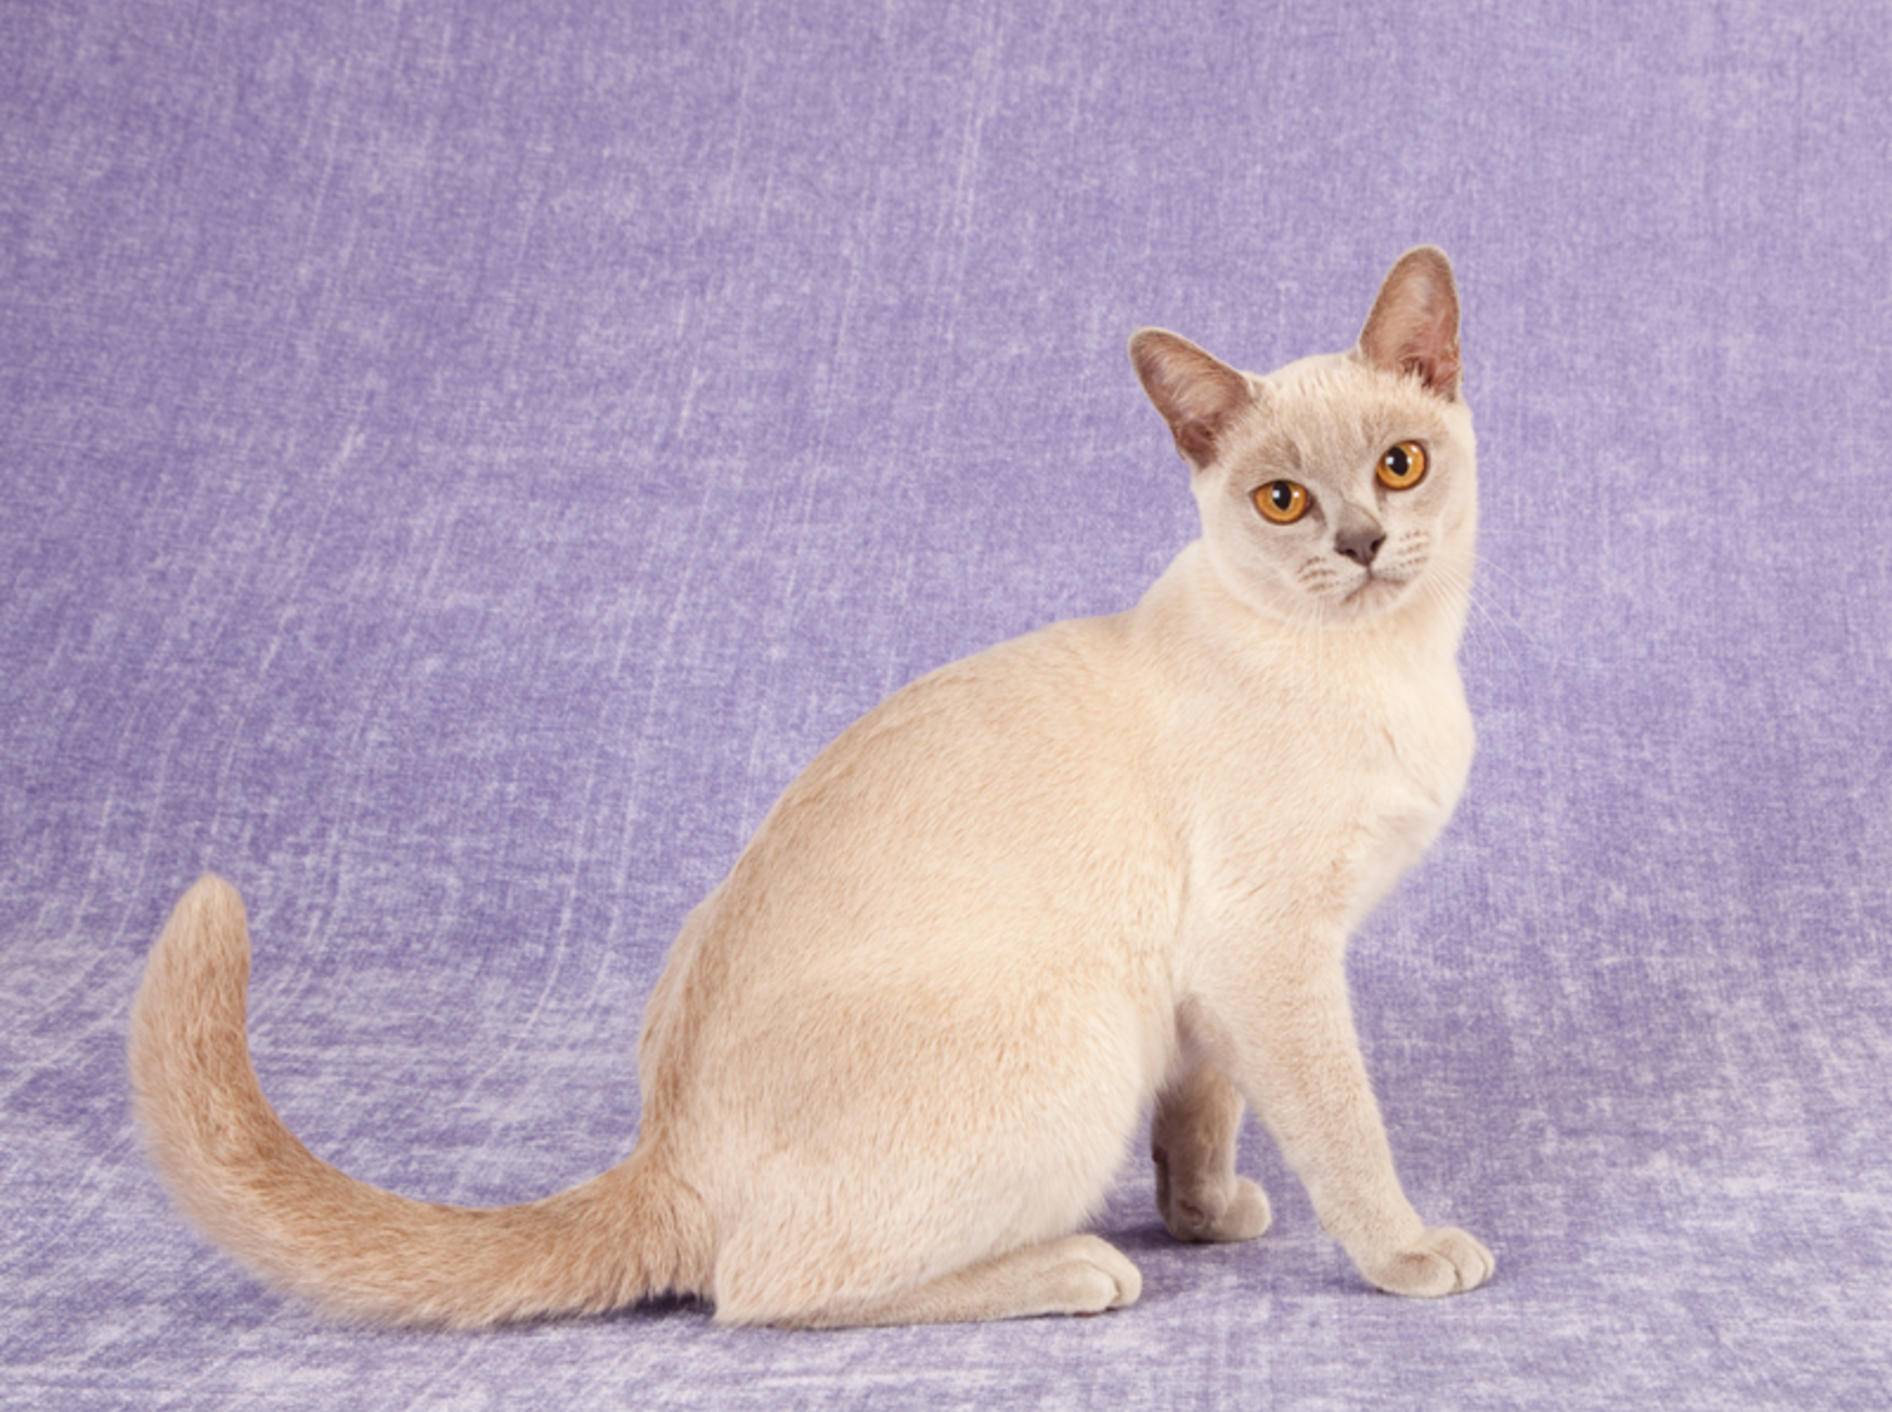 Das Wesen der Burma-Katze ist dem der Siam durchaus ähnlich – Bild: Shutterstock / Linn Currie